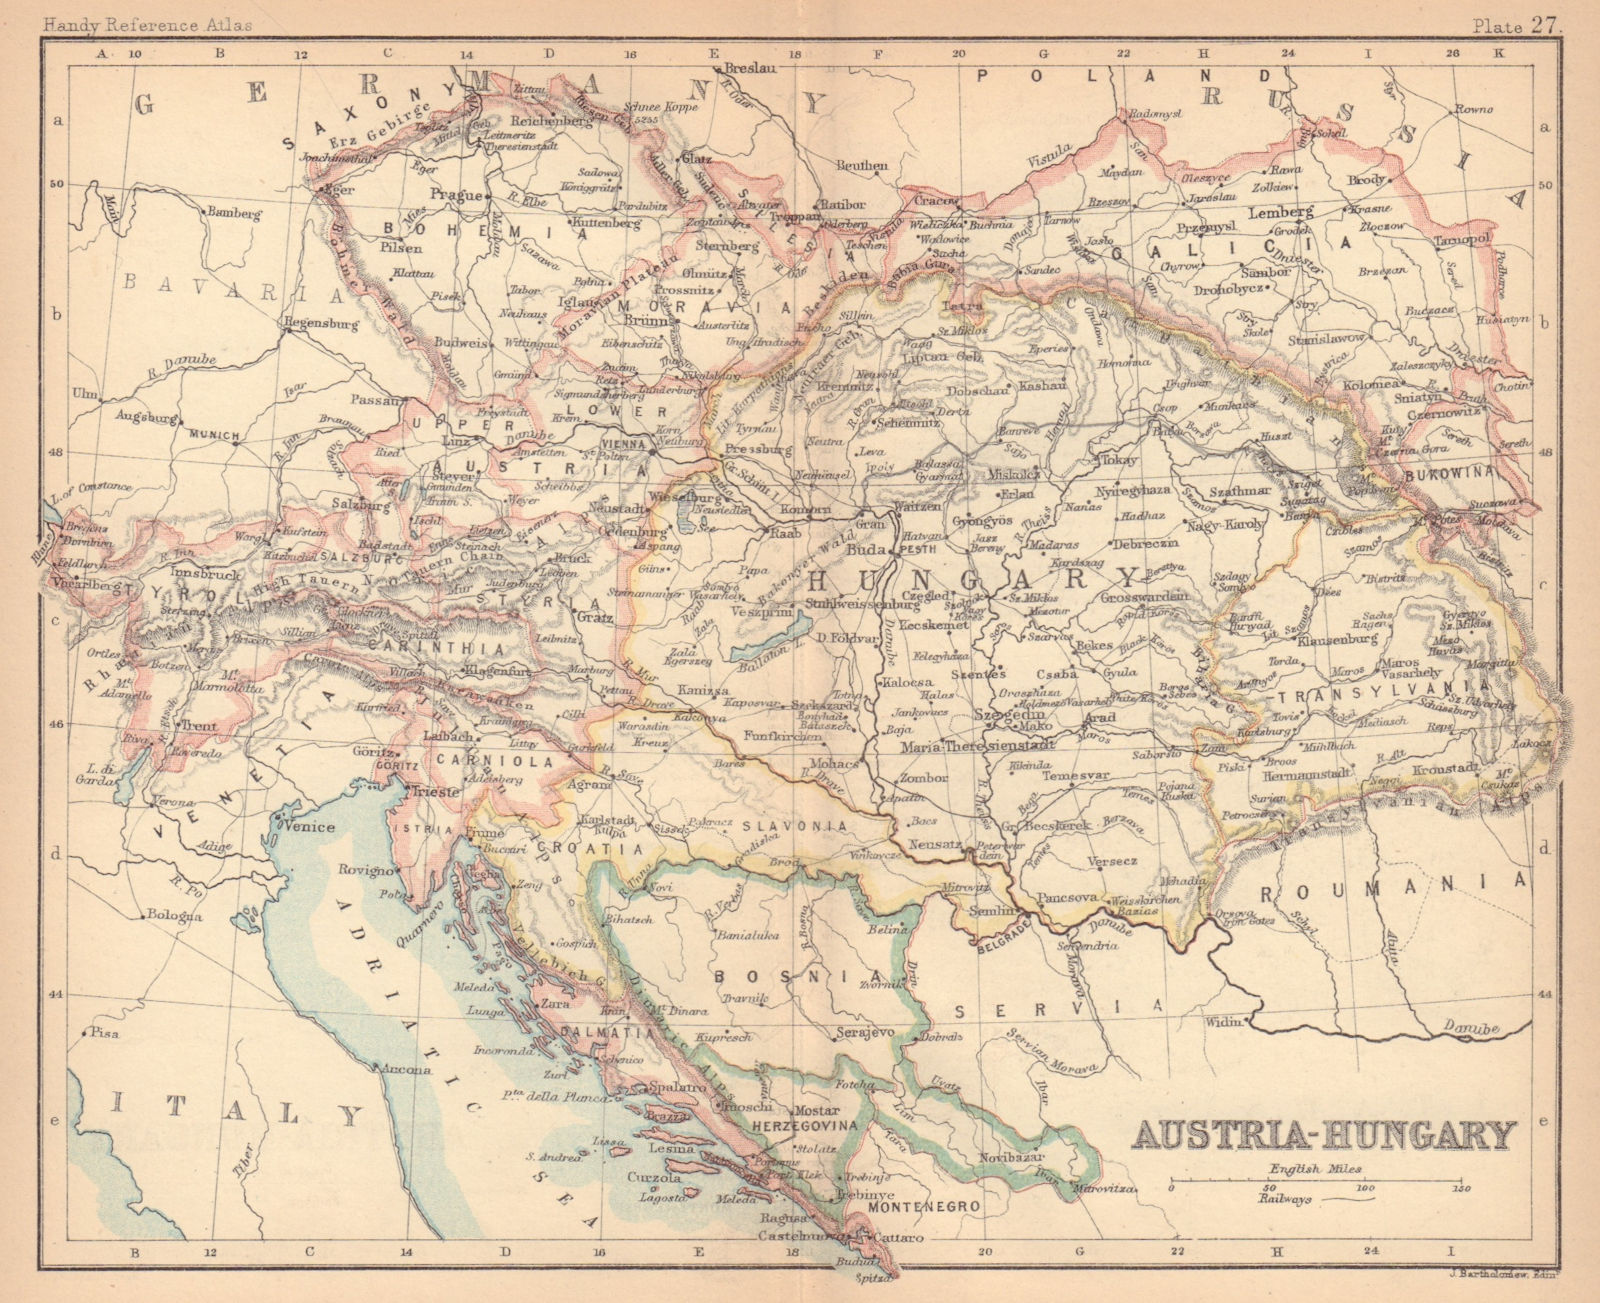 Associate Product Austria-Hungary. Dalmatia Galicia Bohemia. BARTHOLOMEW 1888 old antique map